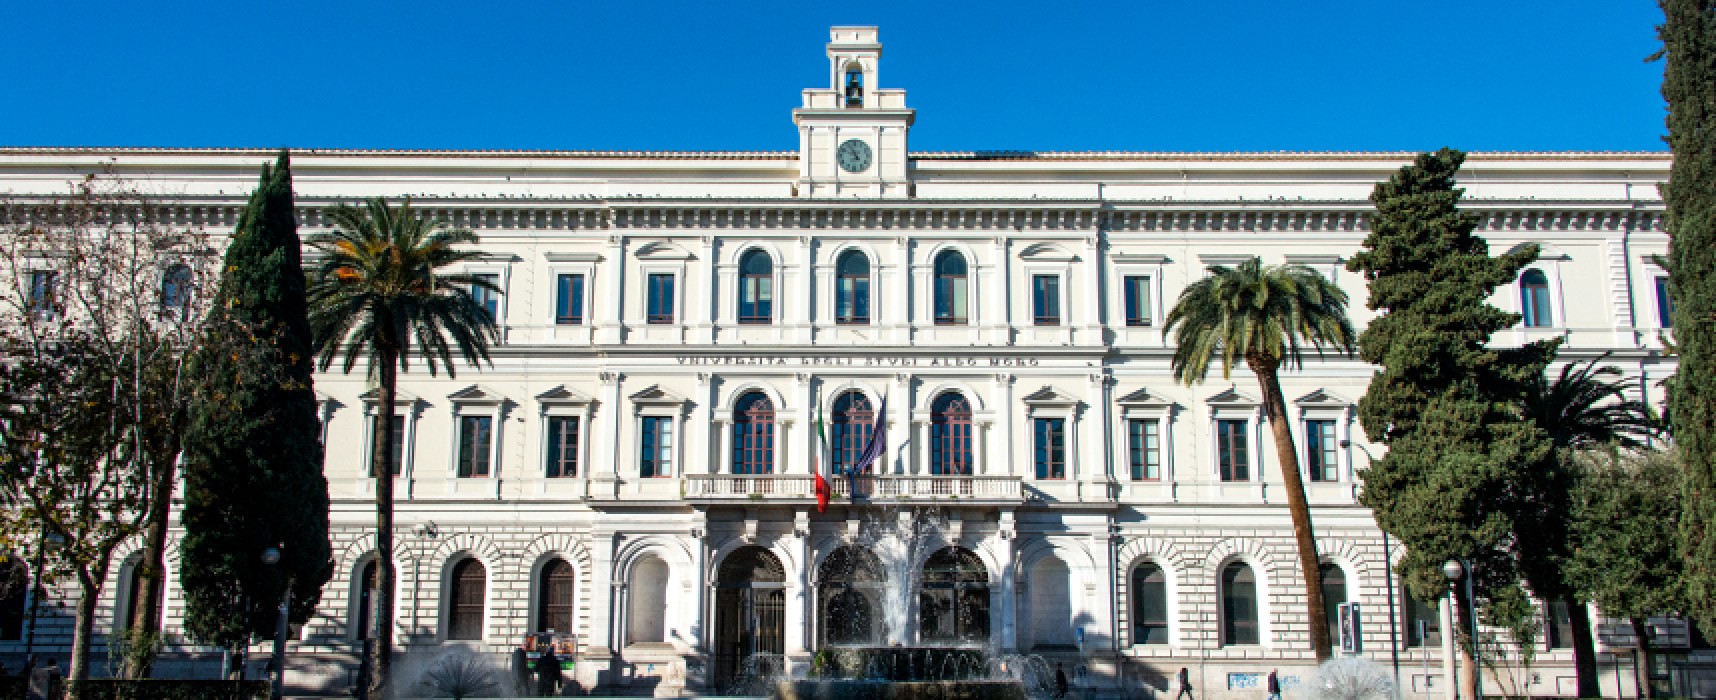 Servizio Civile Universale, quattro i progetti offerti dall’Università di Bari / DETTAGLI